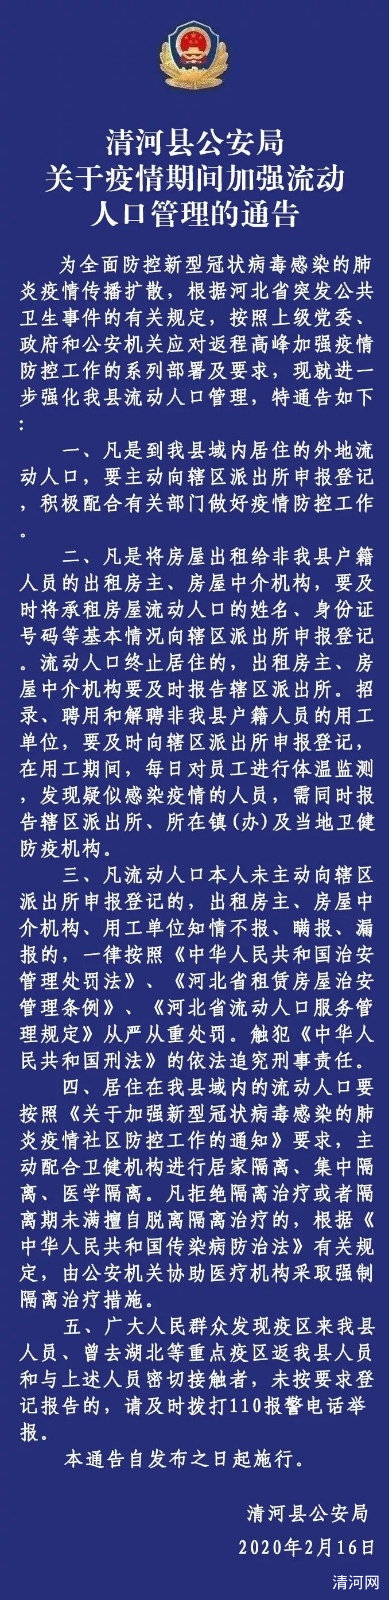 清河县公安局关于疫情期间加强流动人口管理的通告